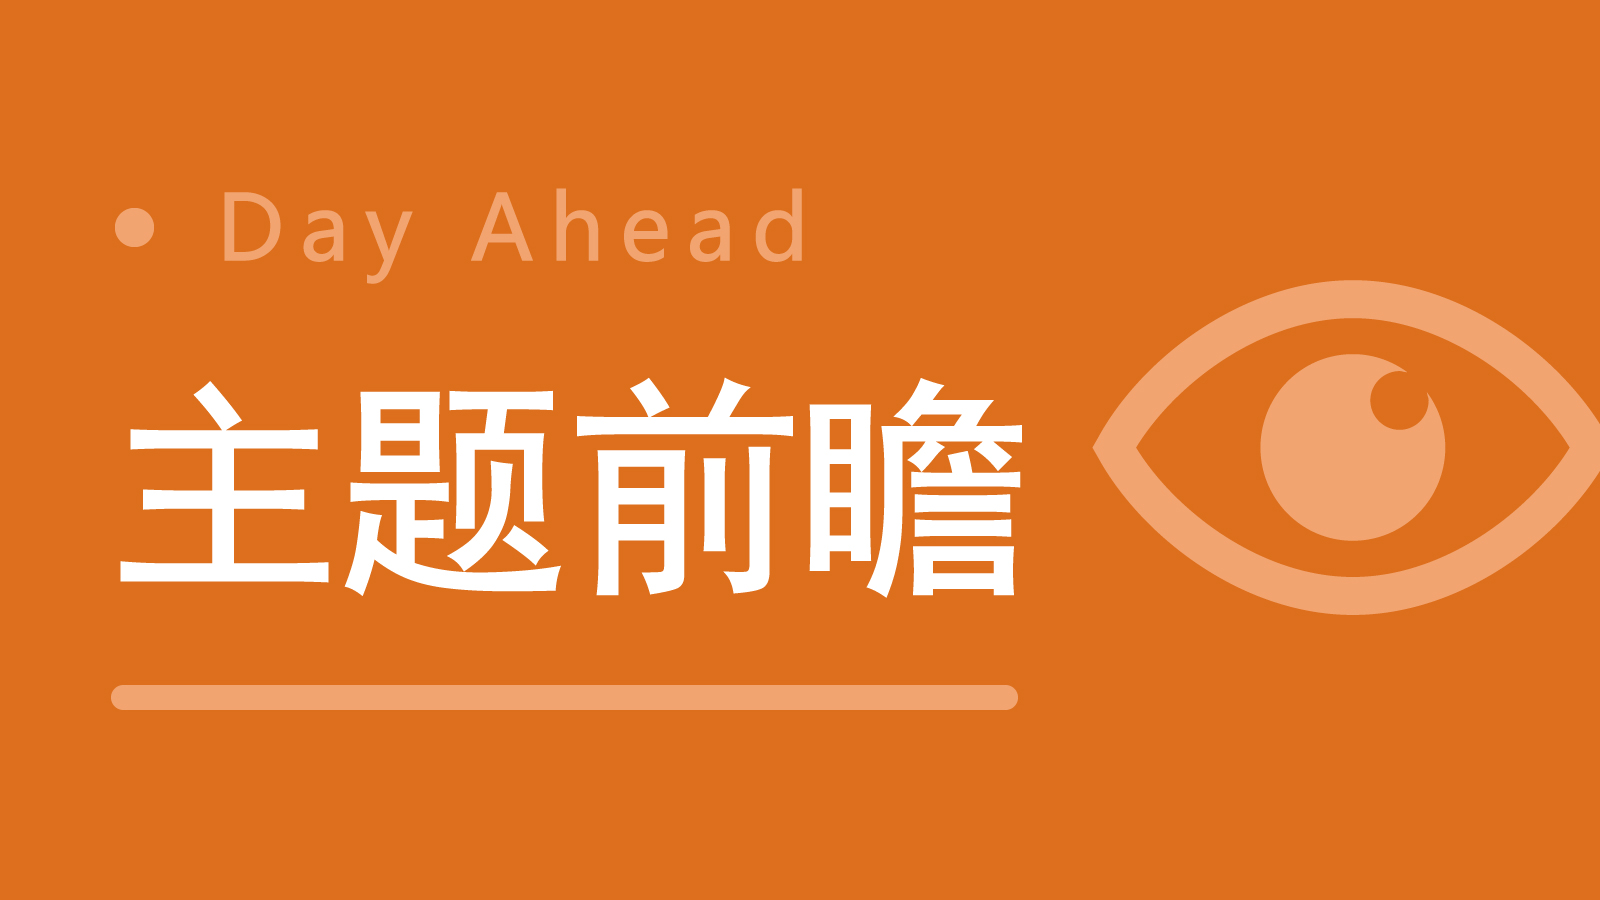 “北脑二号”智能脑机接口系统正式发布；杭州全市域城区将开放智能网联车辆测试与应用丨明日主题前瞻